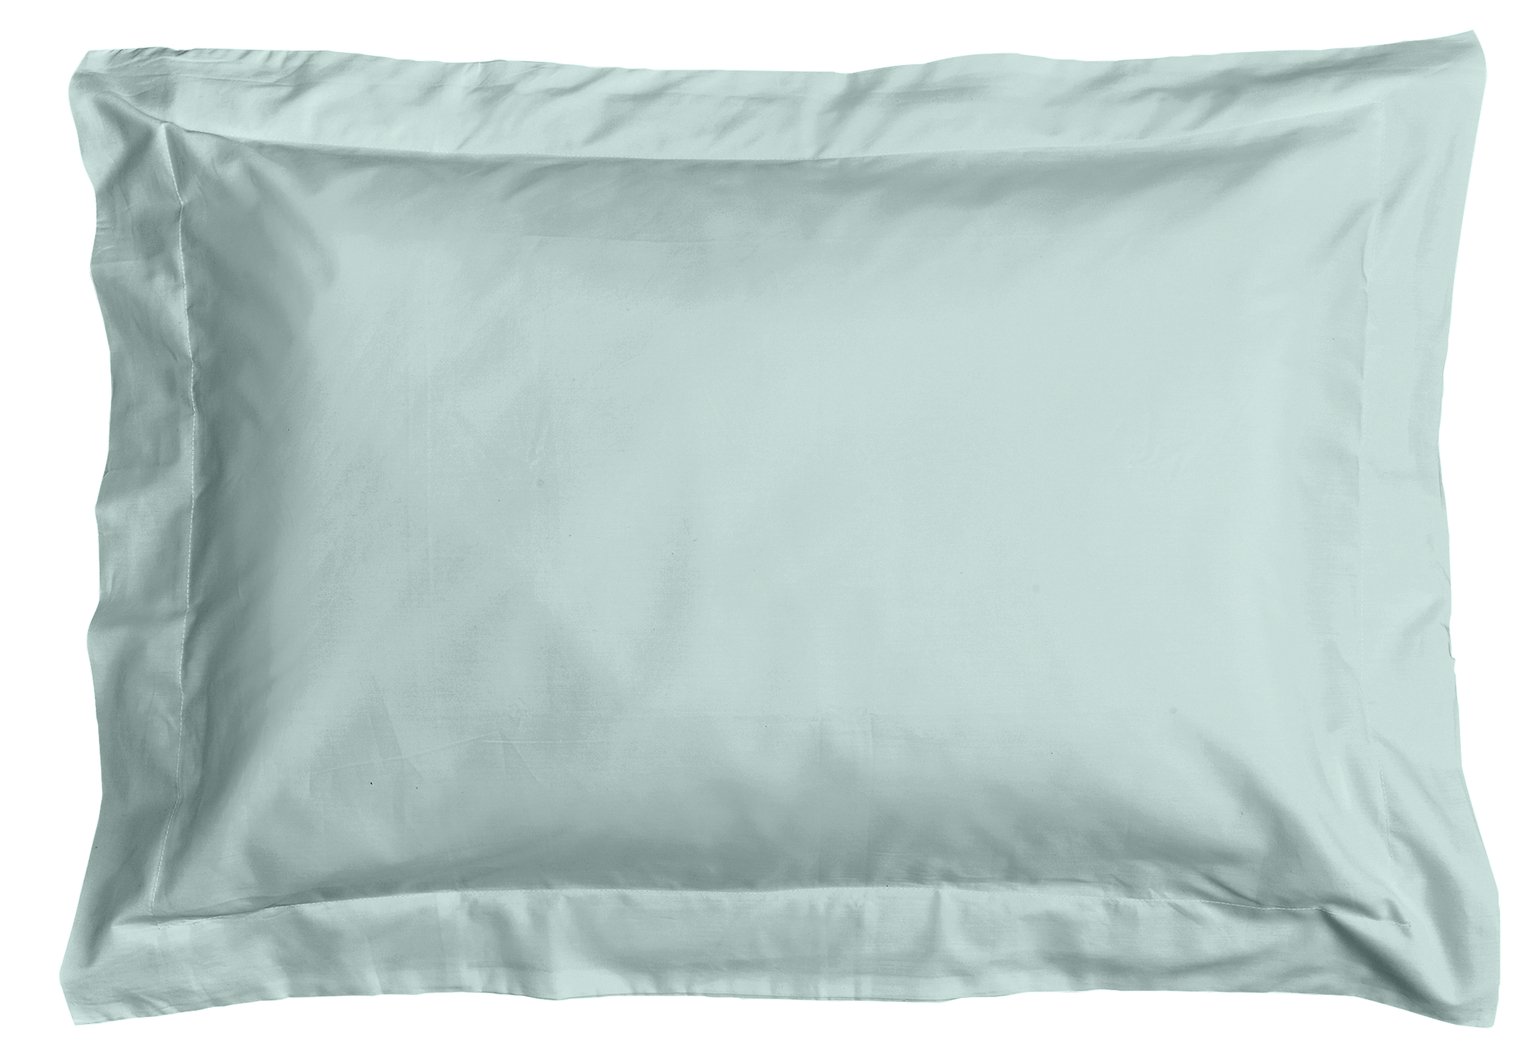 Argos Home Easycare 100% Cotton Oxford Pillowcase Pair